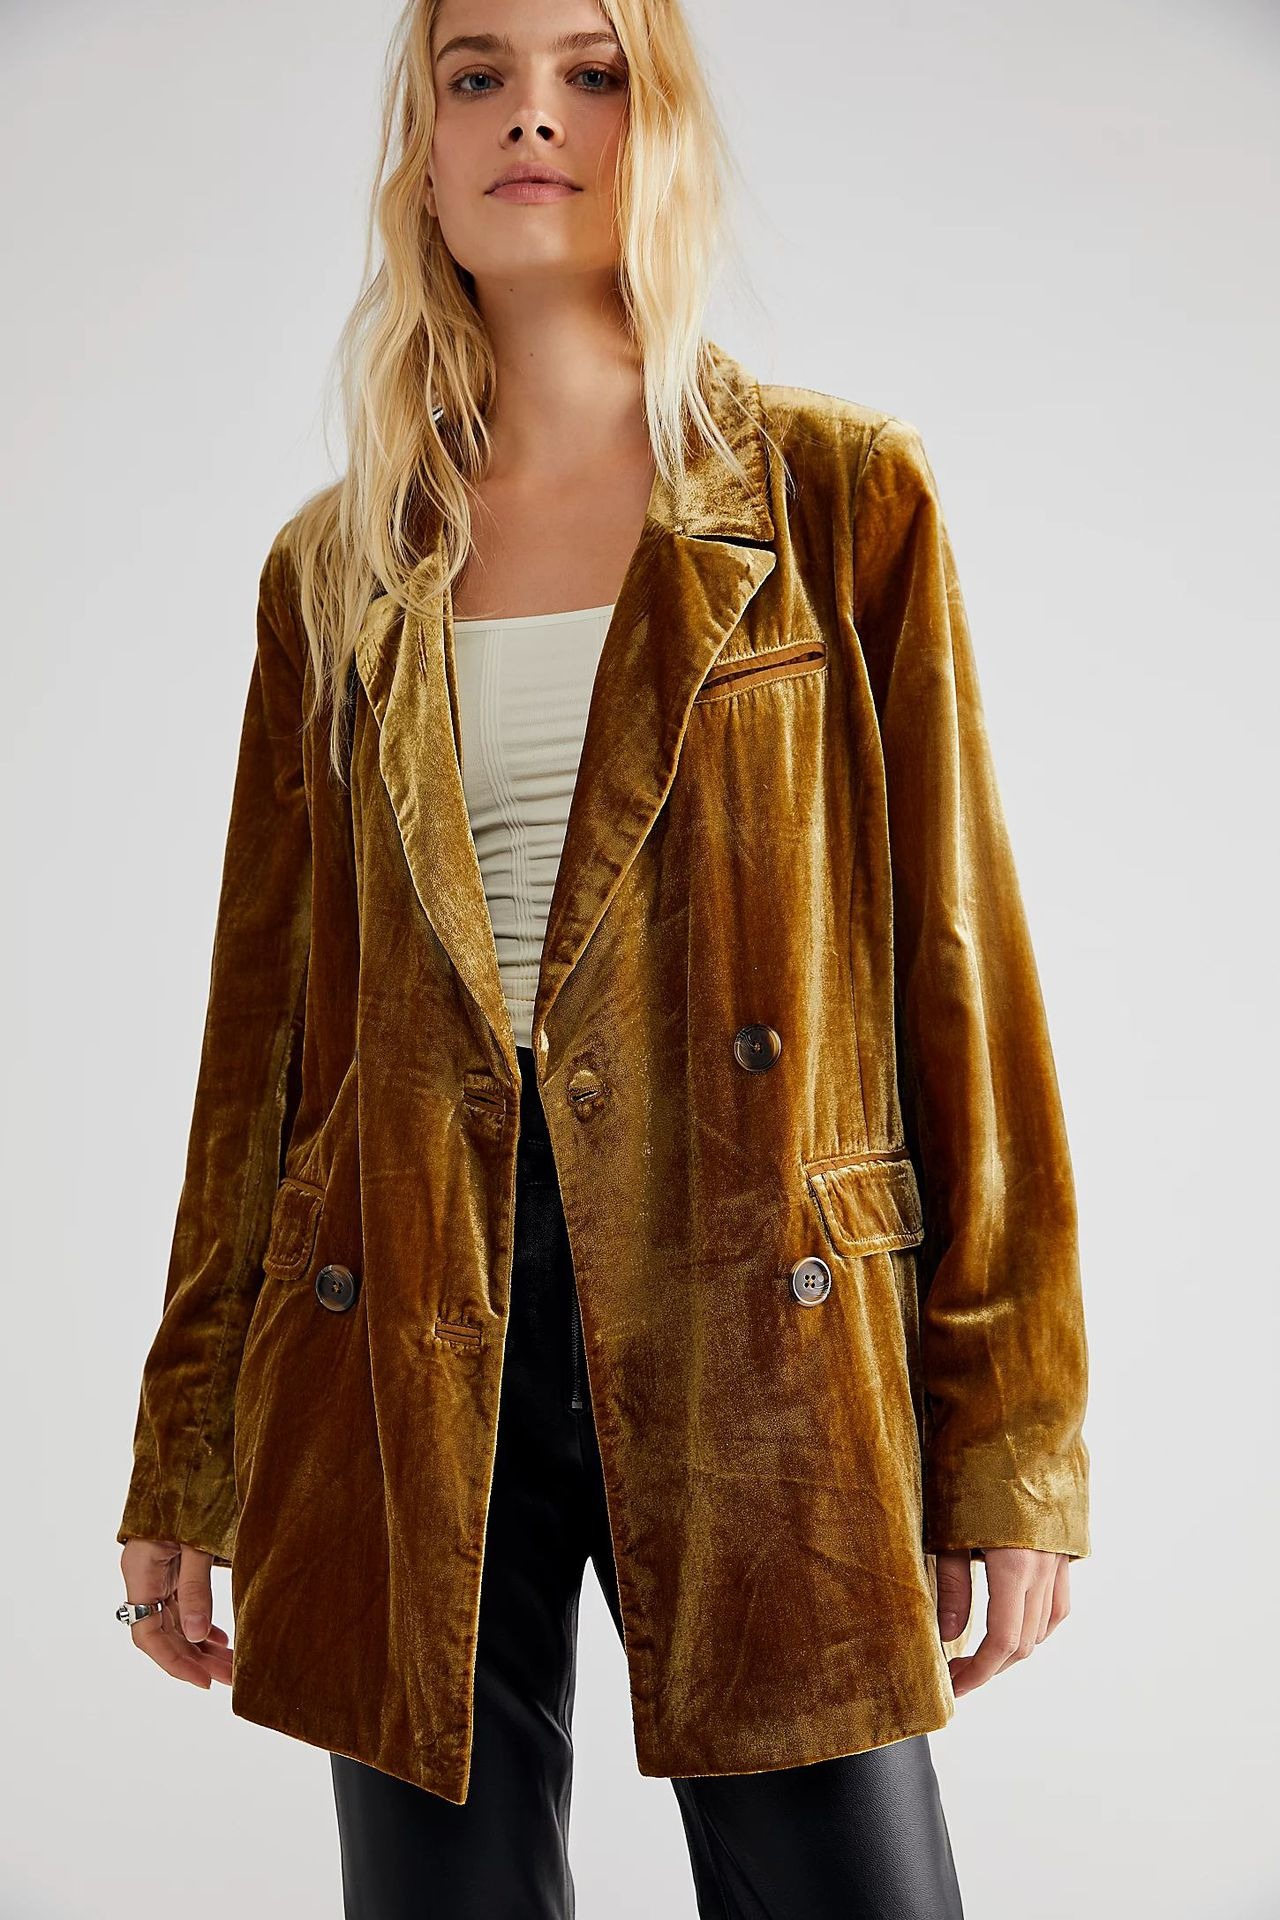 New Golden Velvet Jacket Split Suit Coat Instagram Popular Women’s Top